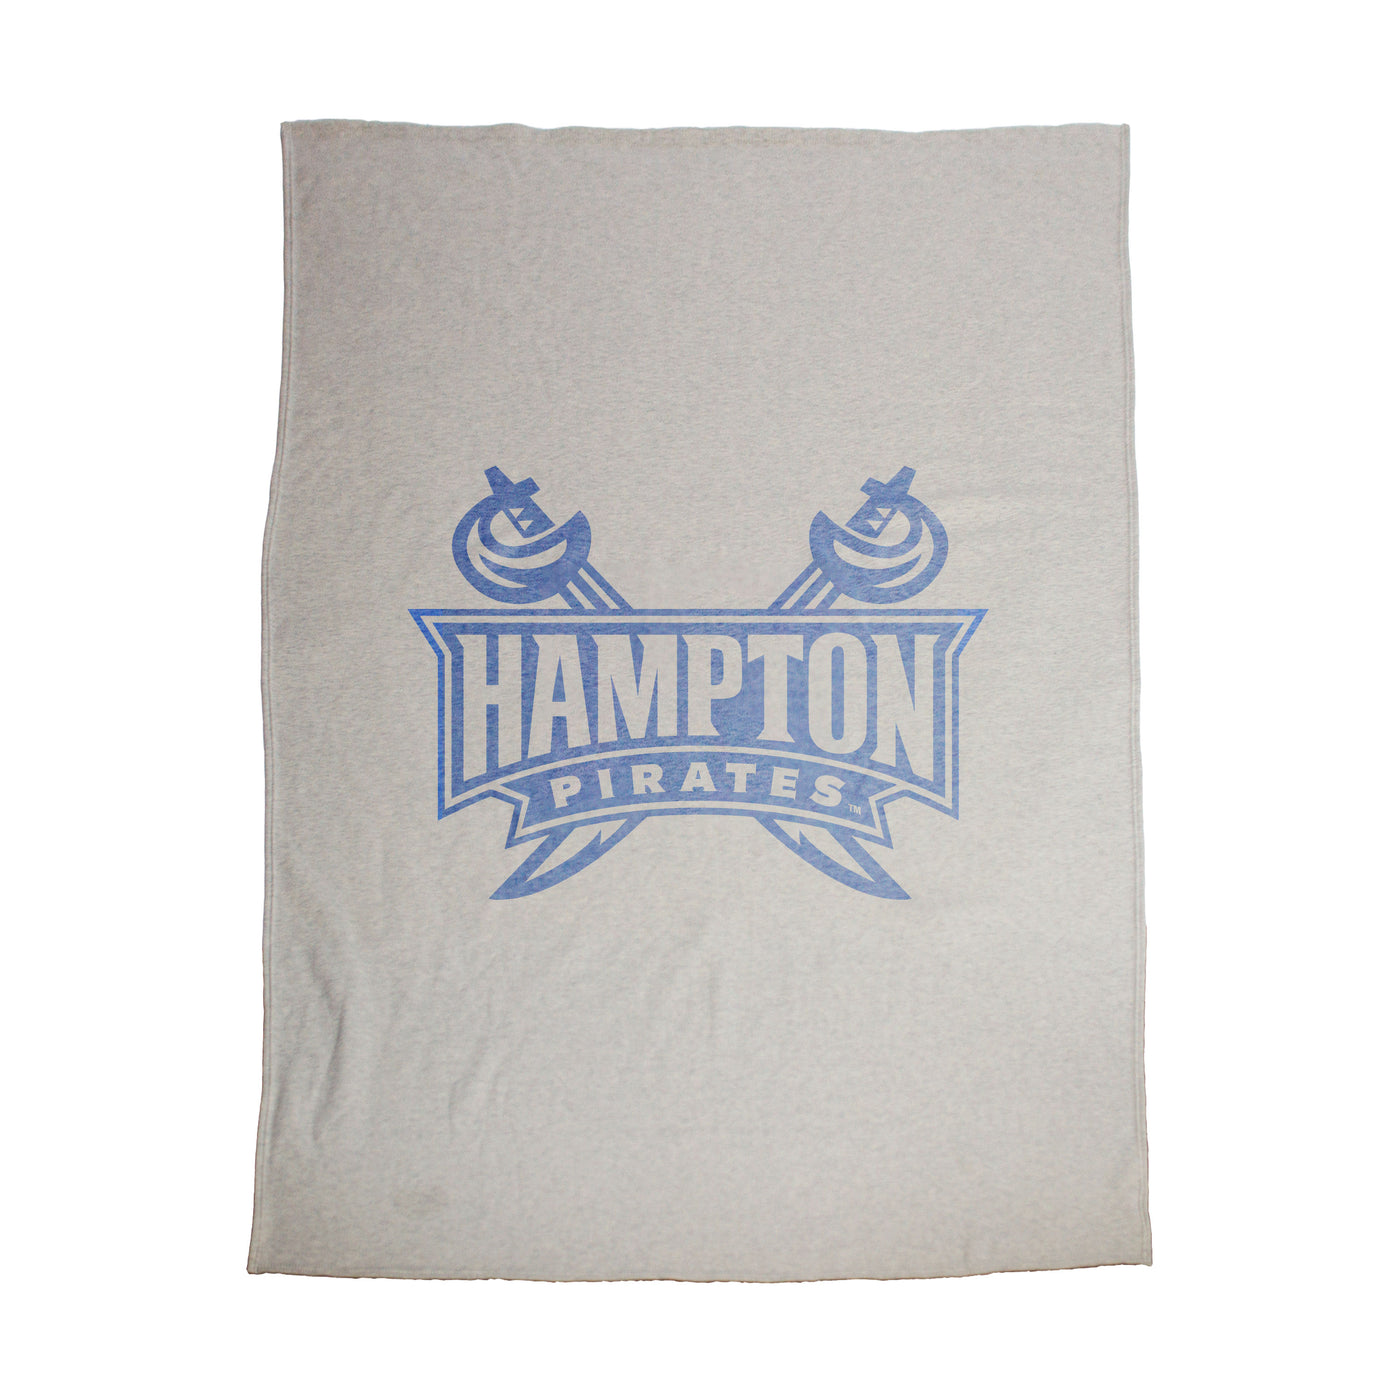 Hampton University Oversized Logo Sublimated Sweatshirt Blanket